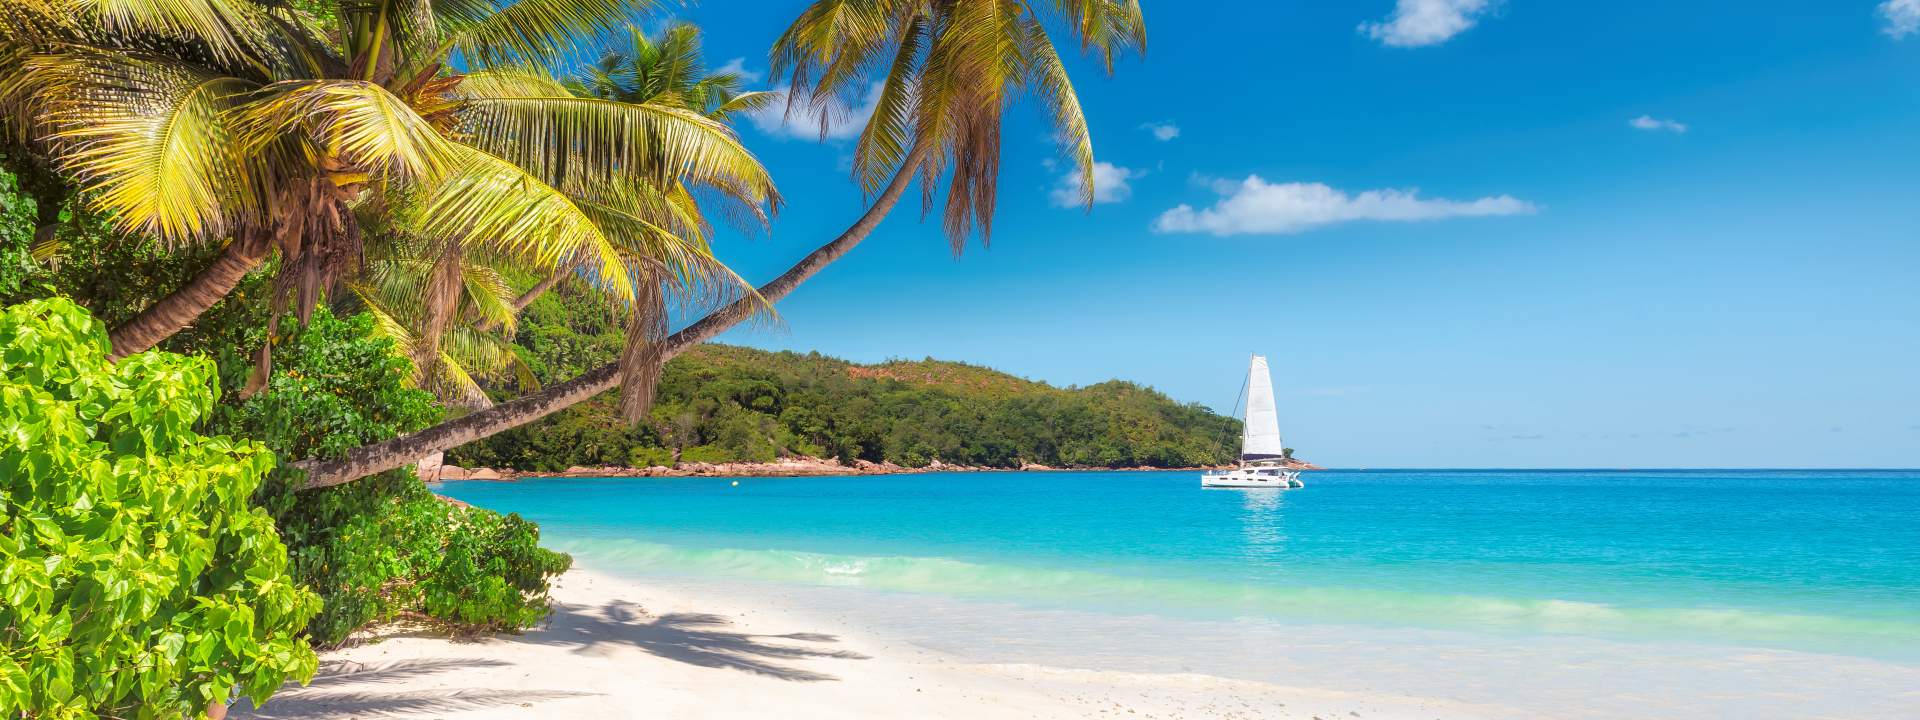 5 giorni per scoprire i gioielli naturali delle Seychelles in catamarano